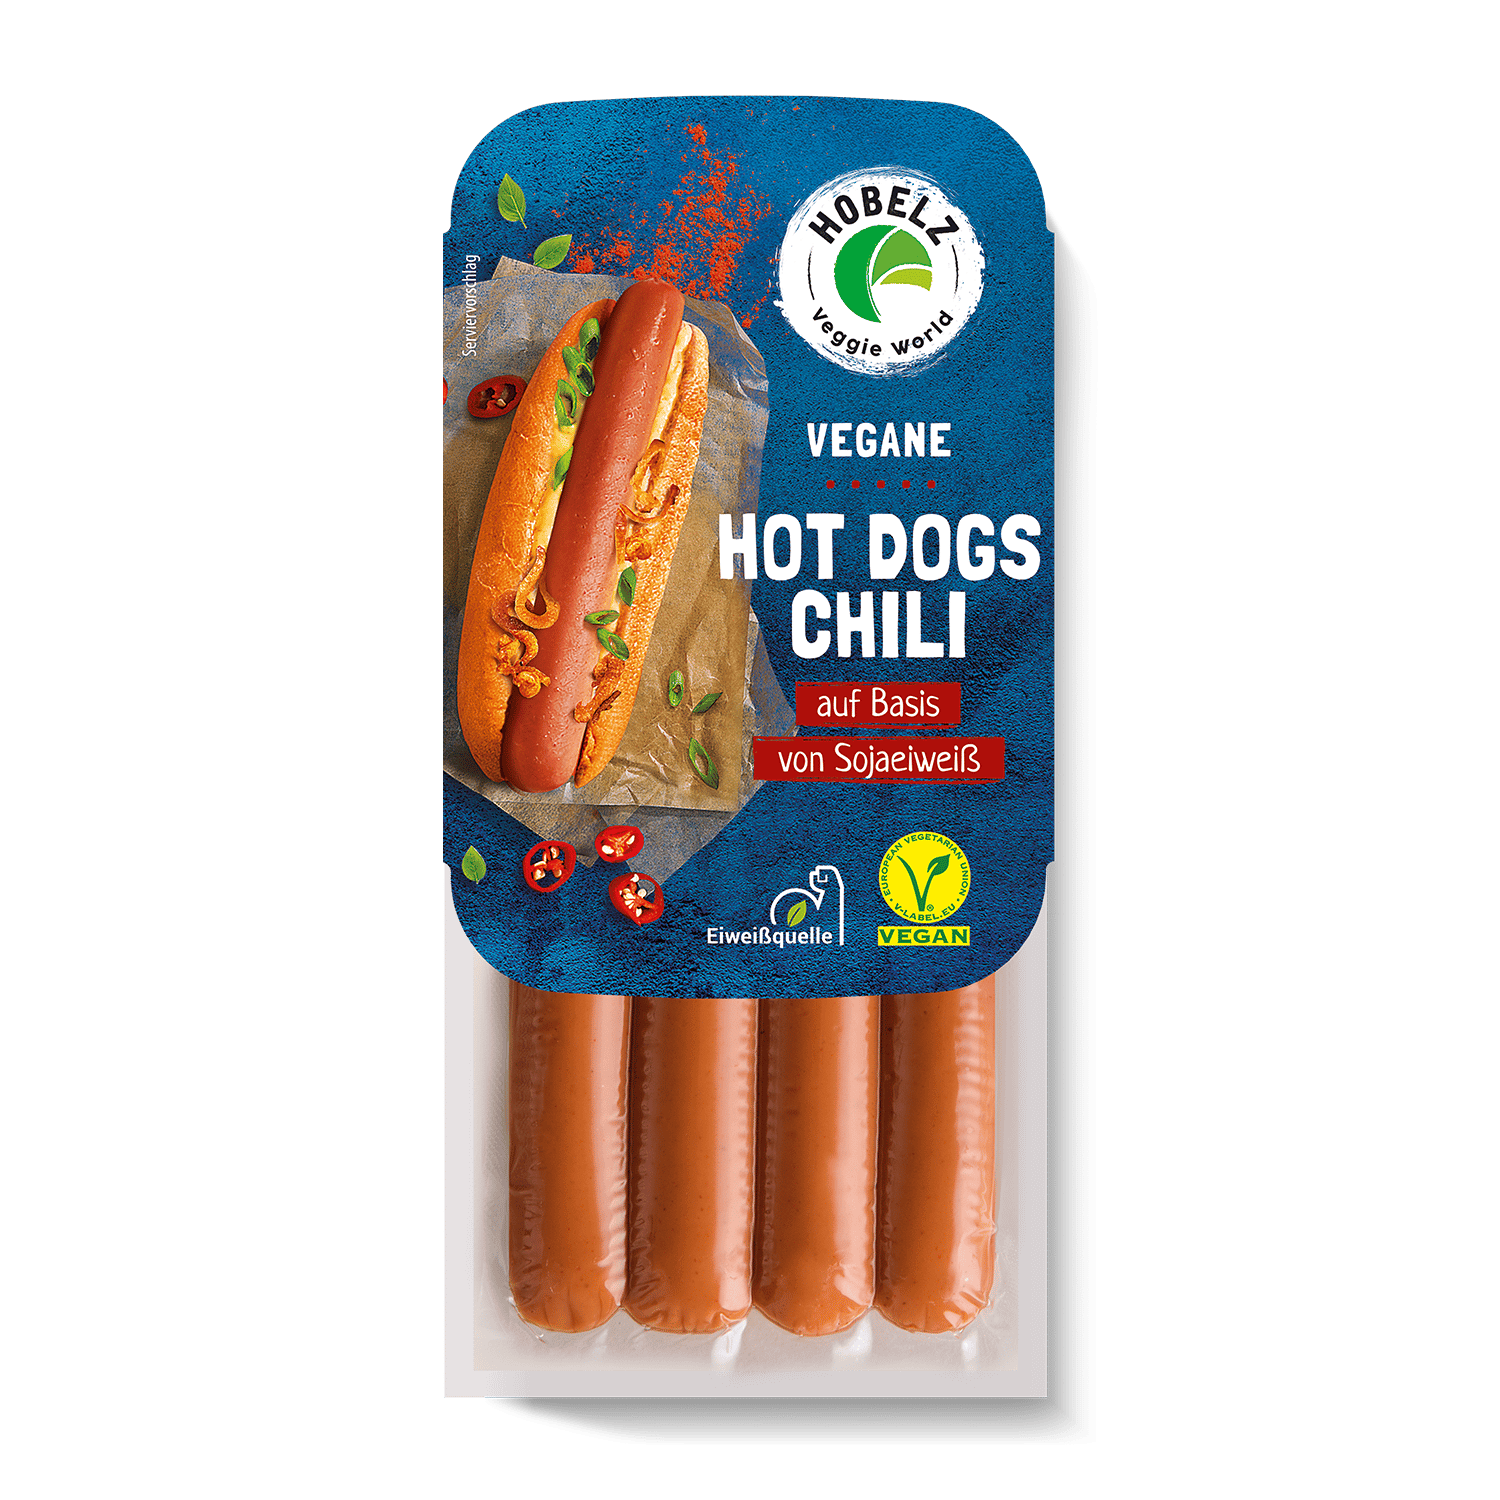 Vegane Hot Dogs Chili, 200g